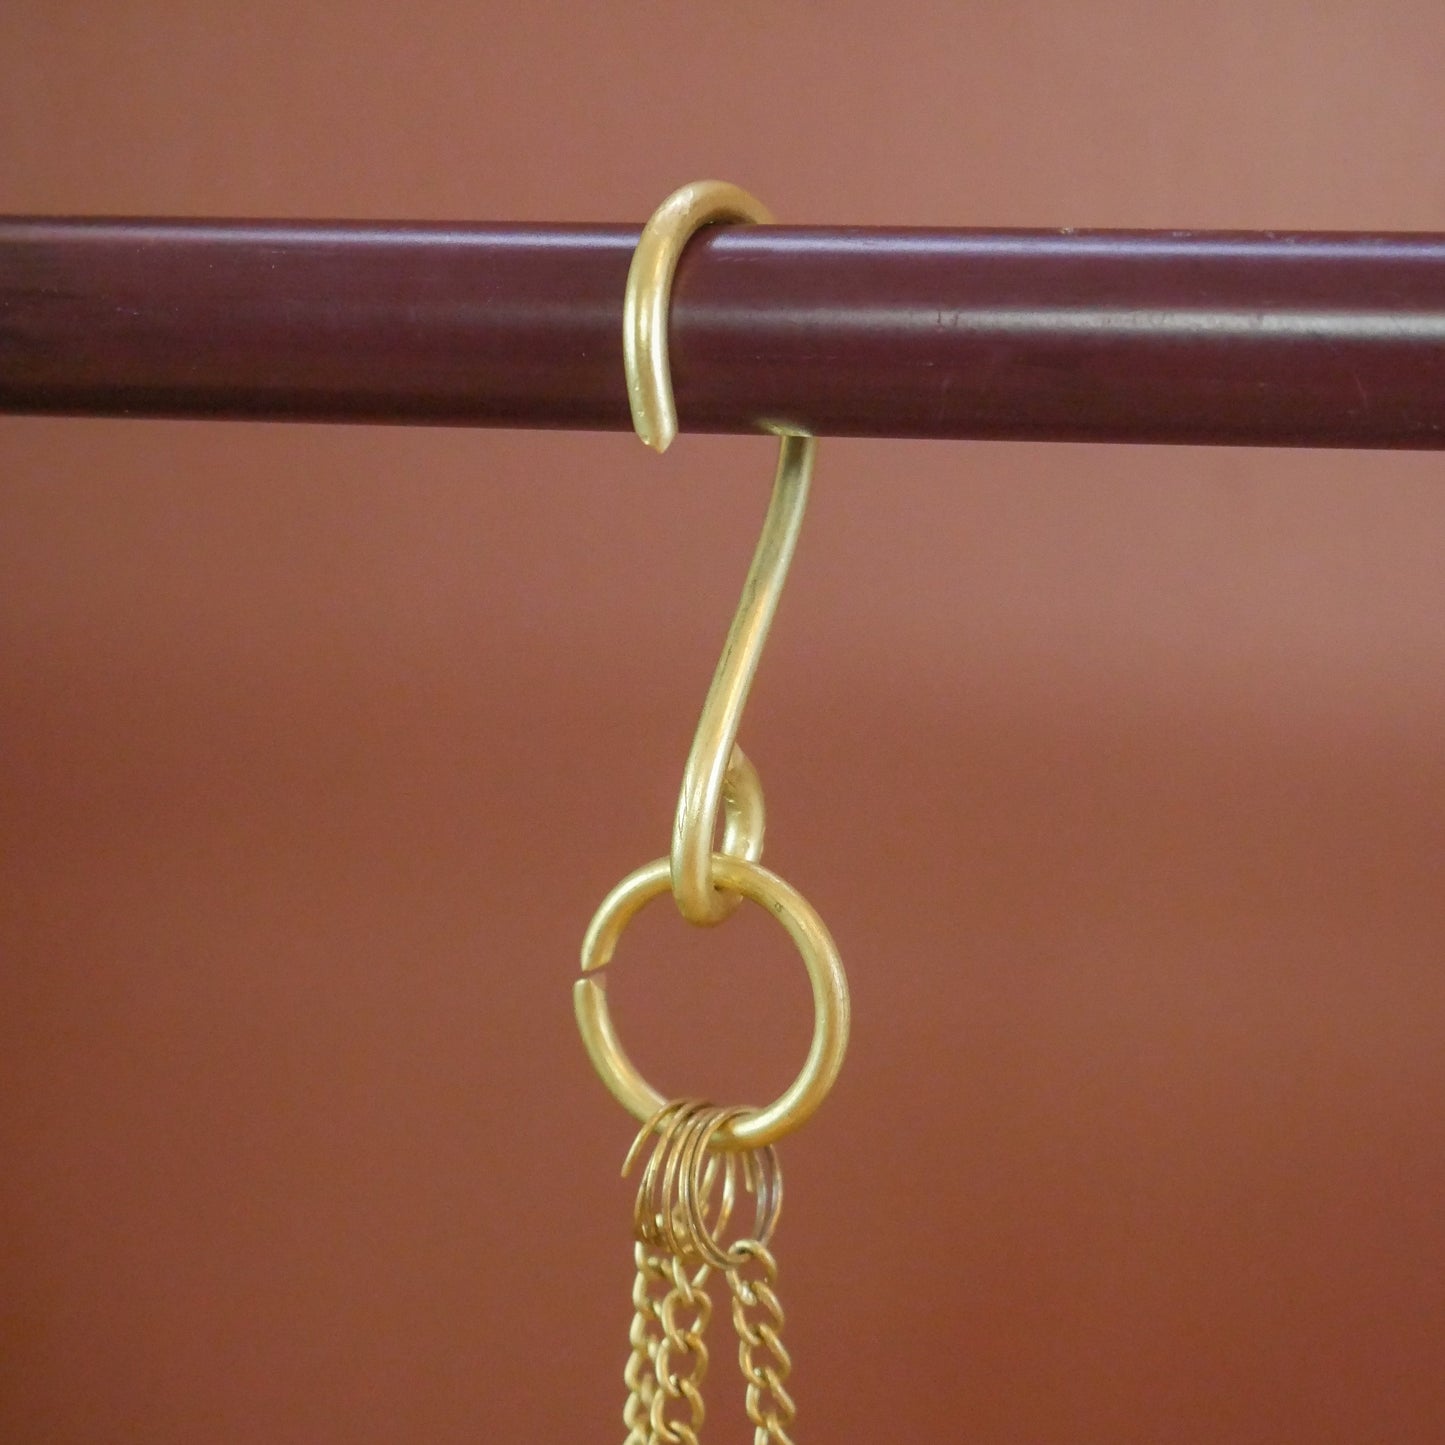 Golden Hanging Incense Burner  | Handmade Brass Incense Holder With Tray 4.5"